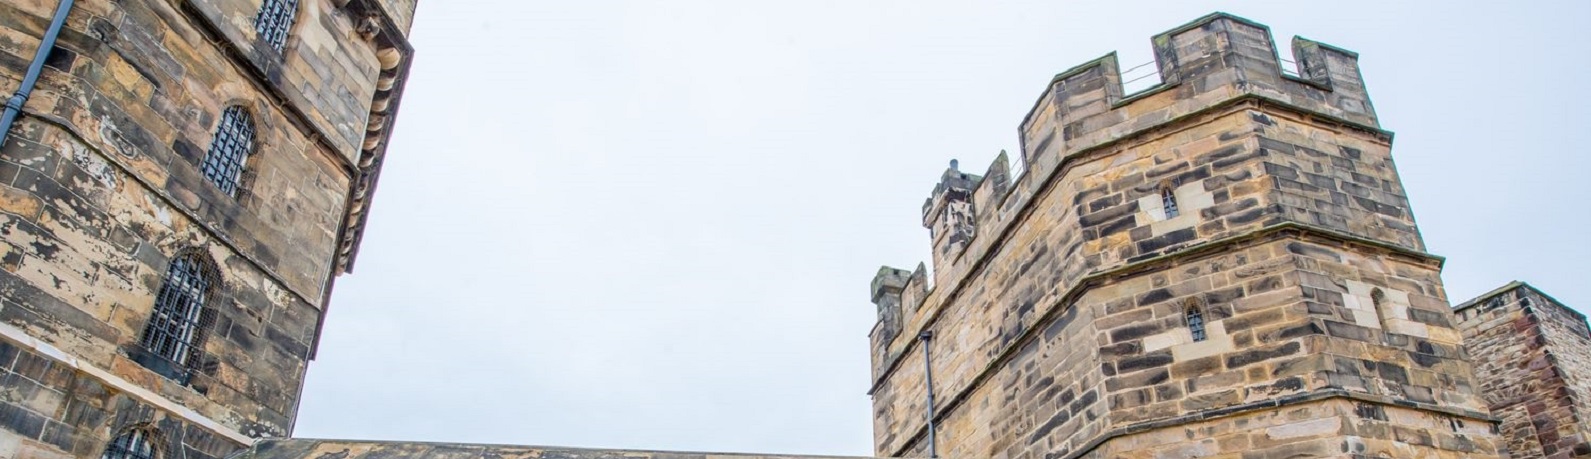 Image of Lancaster Castle